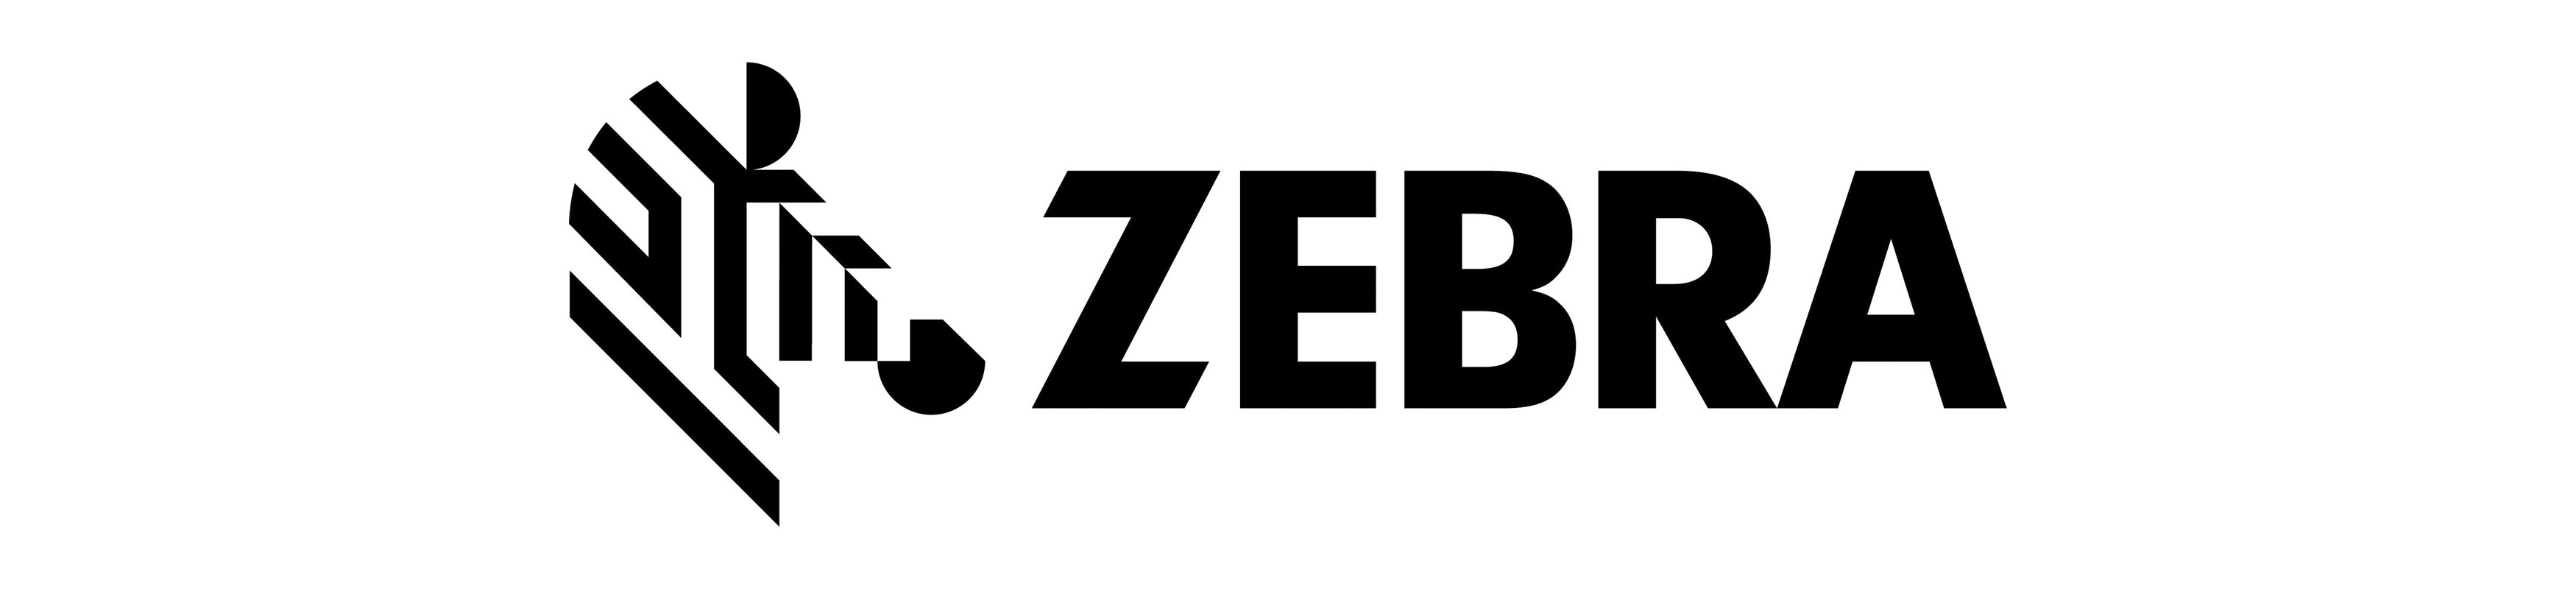 Zebra Scanner